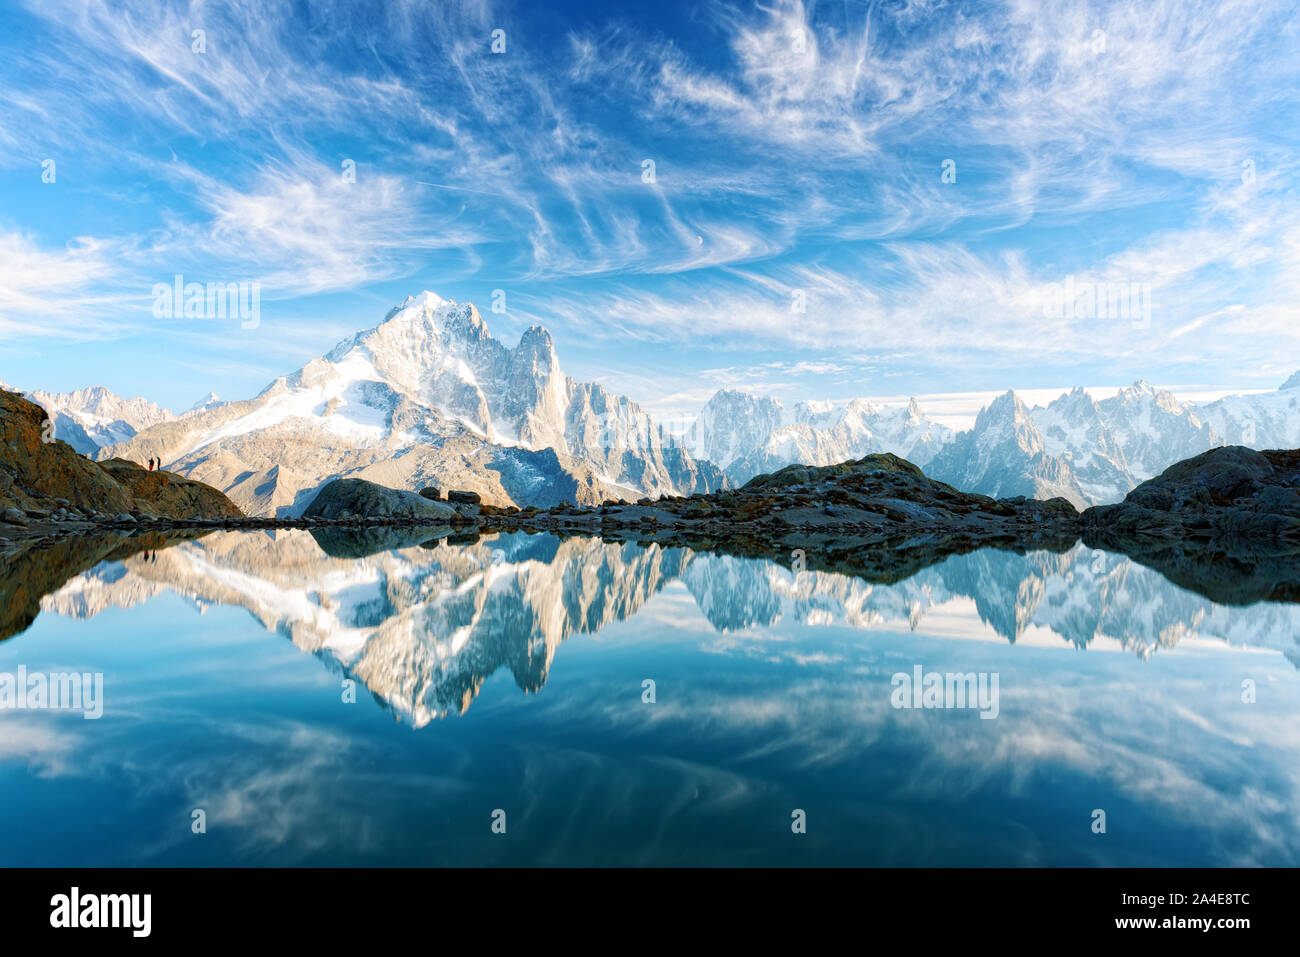 Unglaubliche Aussicht auf klares Wasser und Himmel Reflexion über Lac Blanc See in Frankreich Alpen. Monte Bianco Berge im Hintergrund. Landschaftsfotografie, Chamonix. Stockfoto